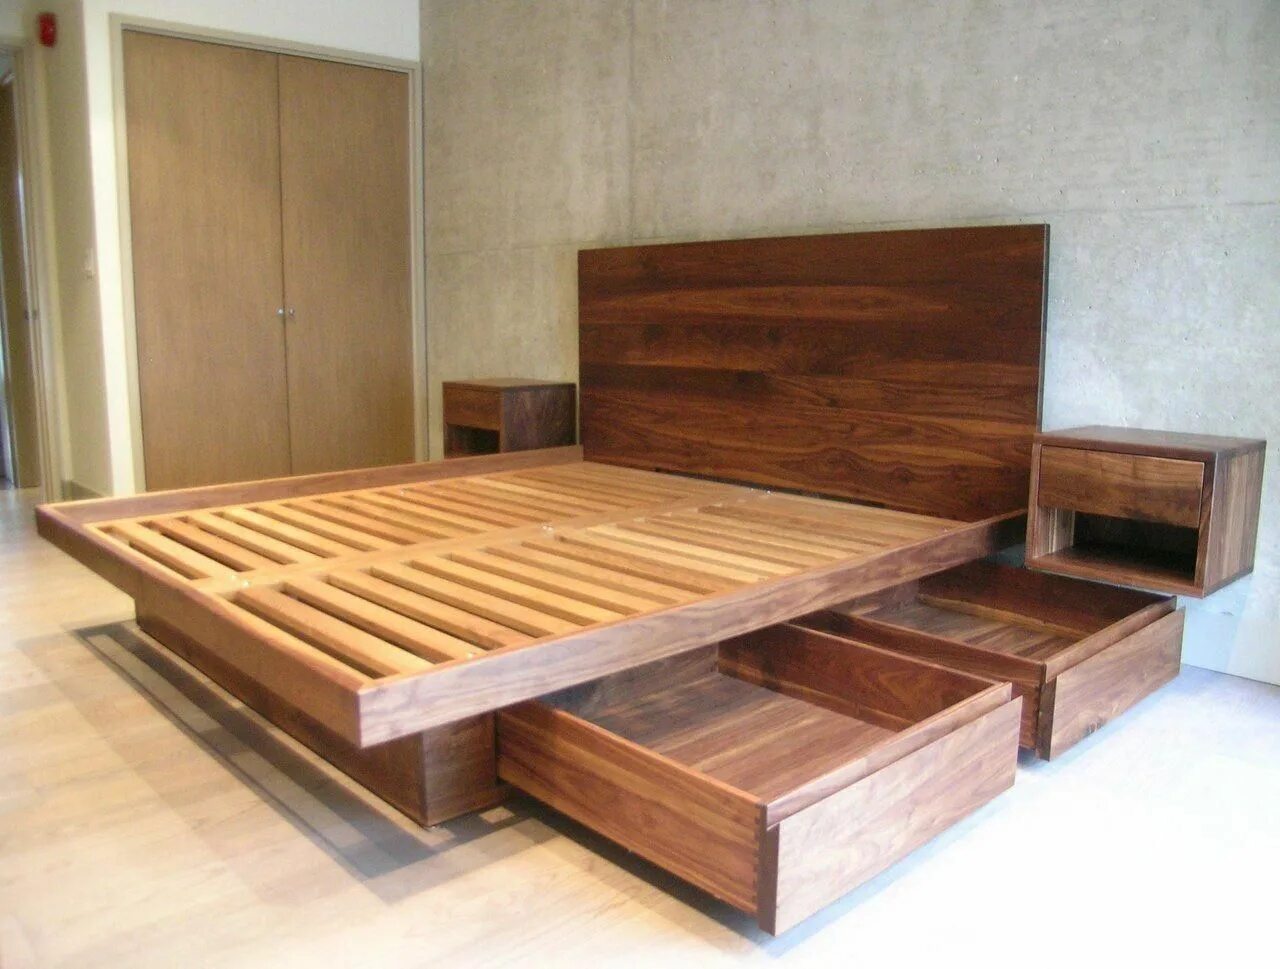 Самодельная кровать из дерева. Кровать двуспальная деревянная. Кровать из досок. Кровать самодельная из дерева двуспальная. Кровать каркасная деревянная.